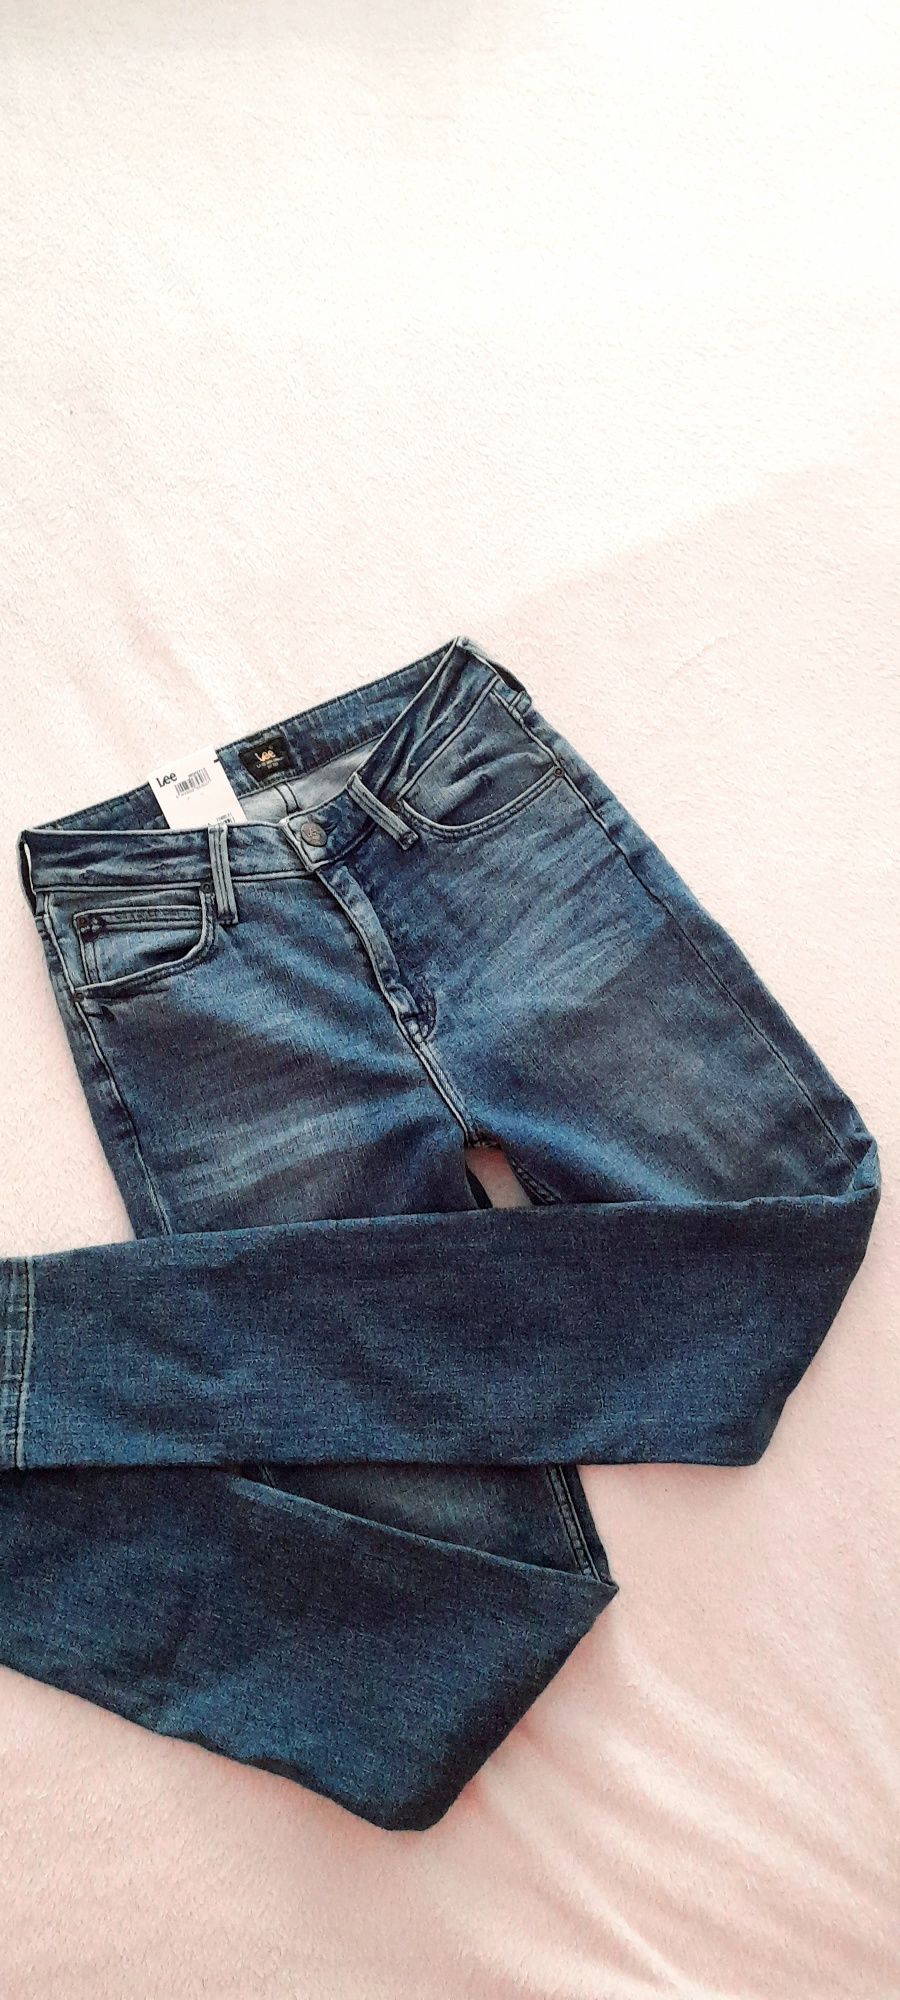 SUPER OKAZJA nowe jeansy Lee spodnie rurki kobiece sexy xs 34 s 36